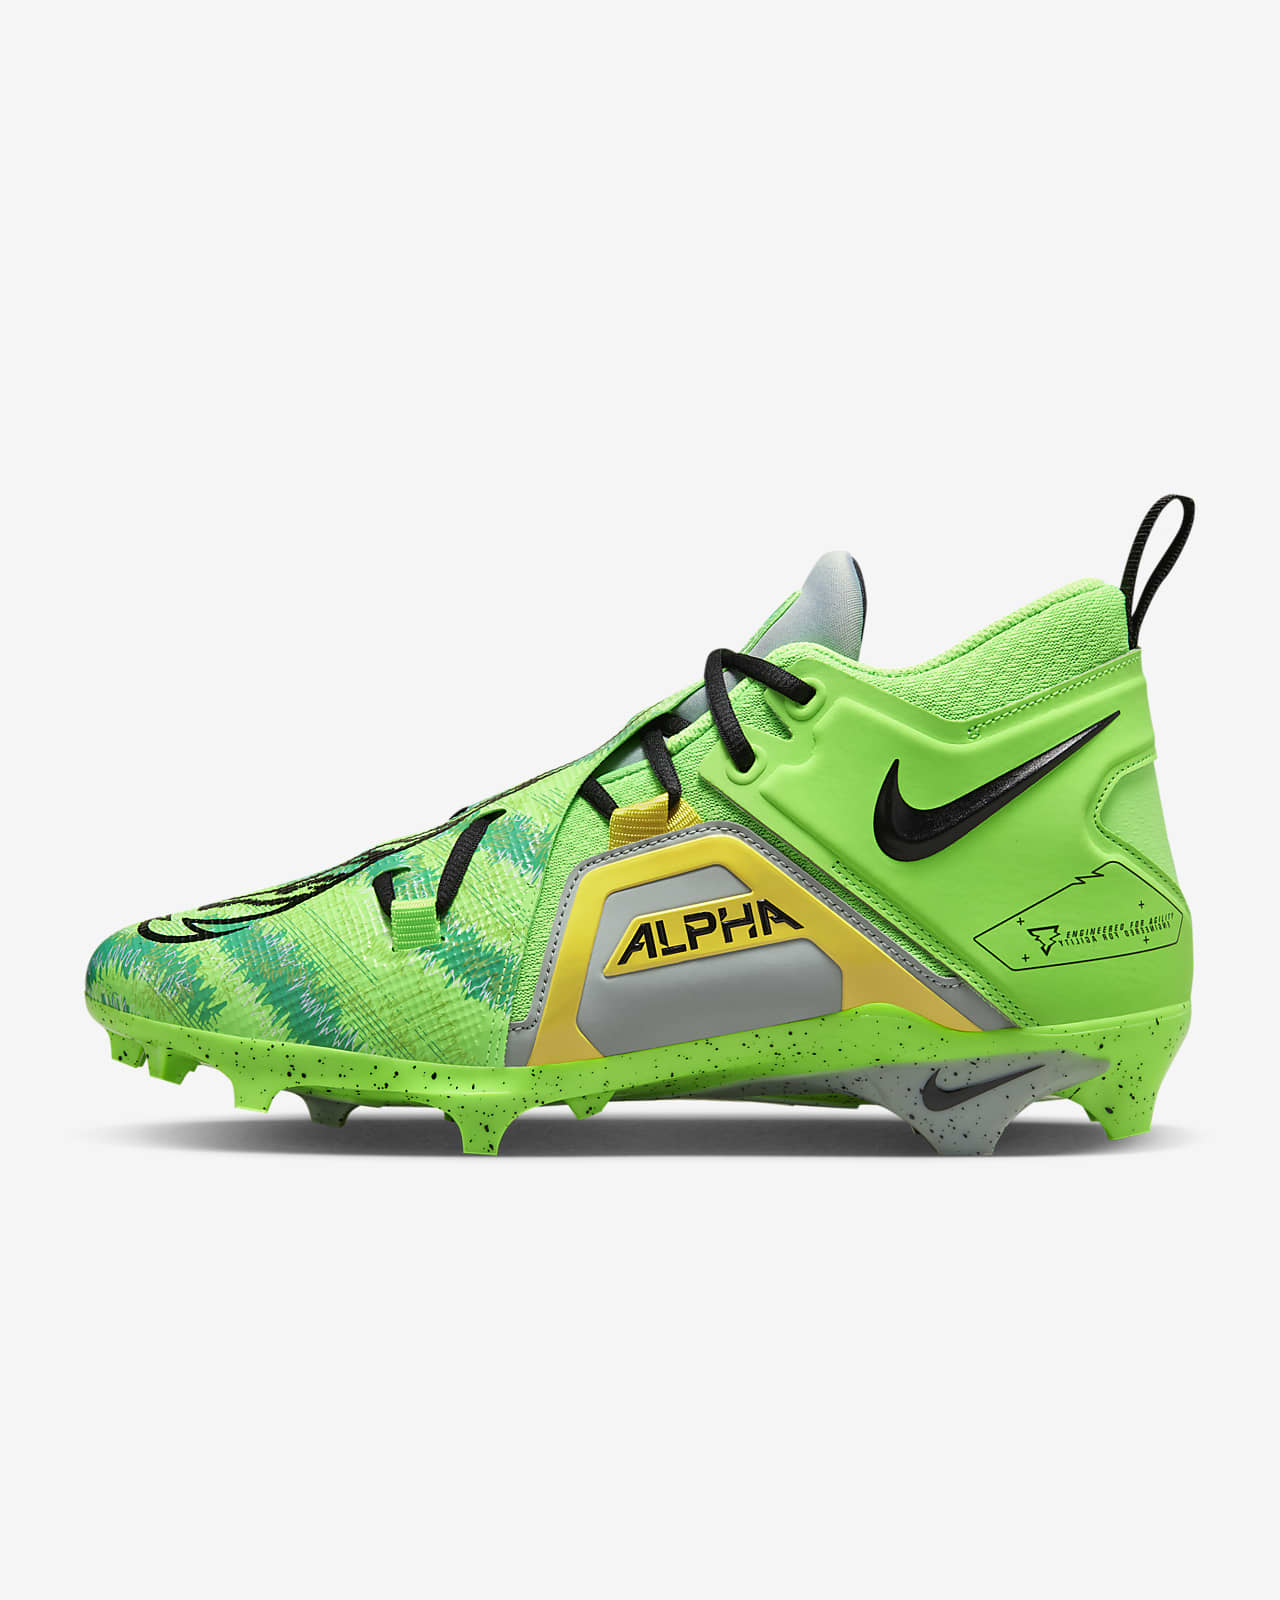 Cleats Nike Alpha | lupon.gov.ph